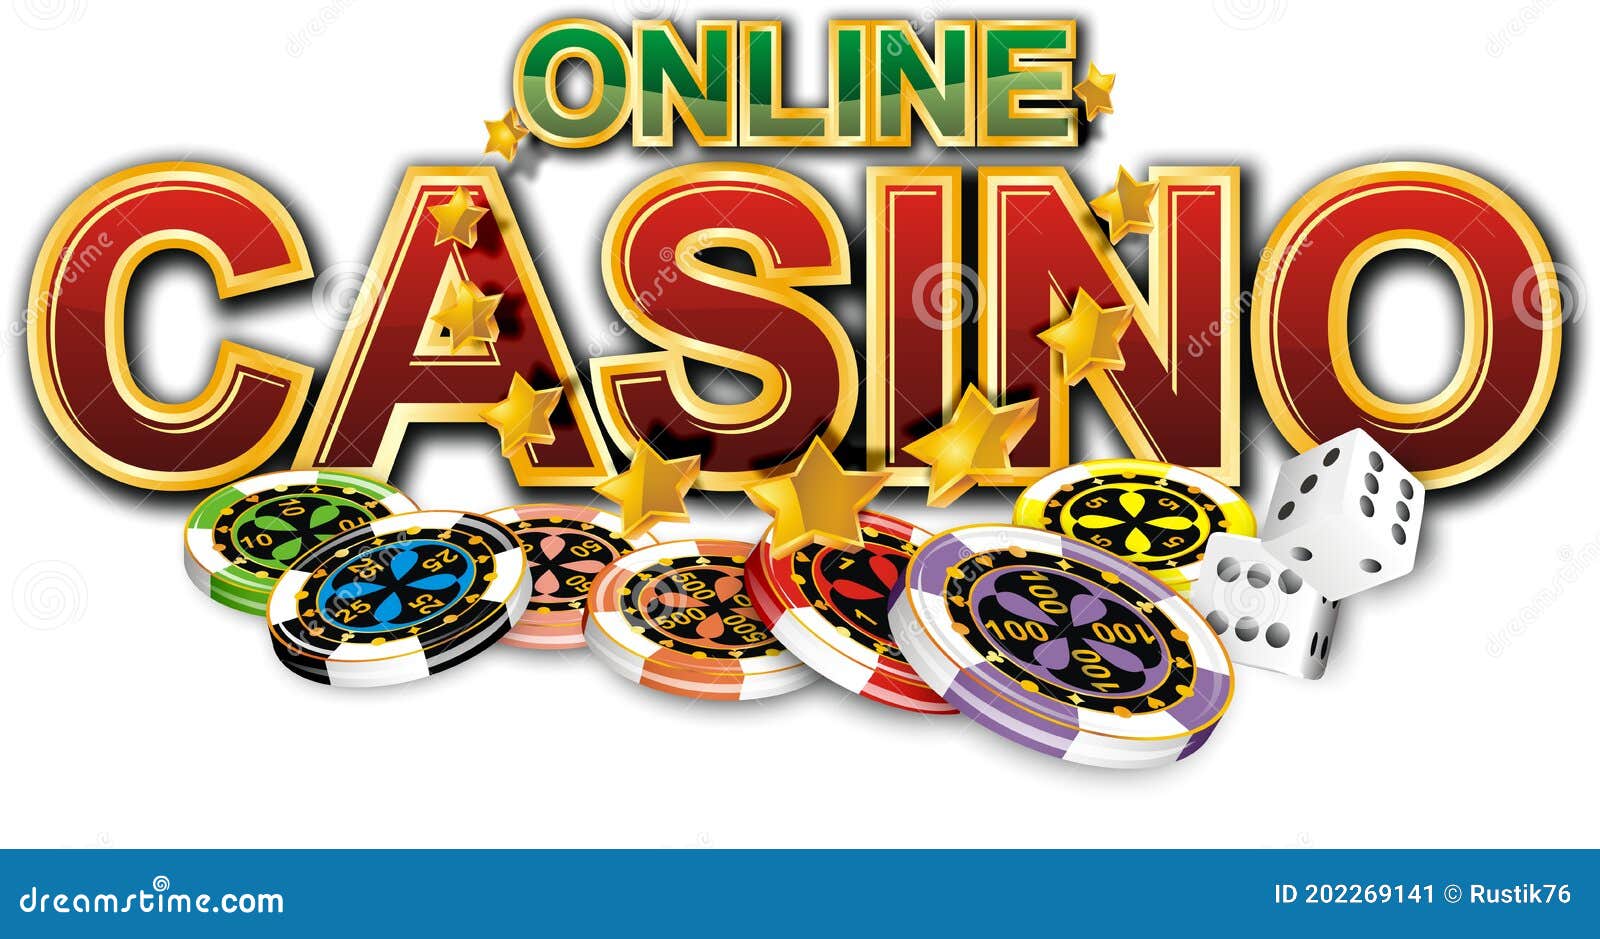 онлайн программы казино скачать